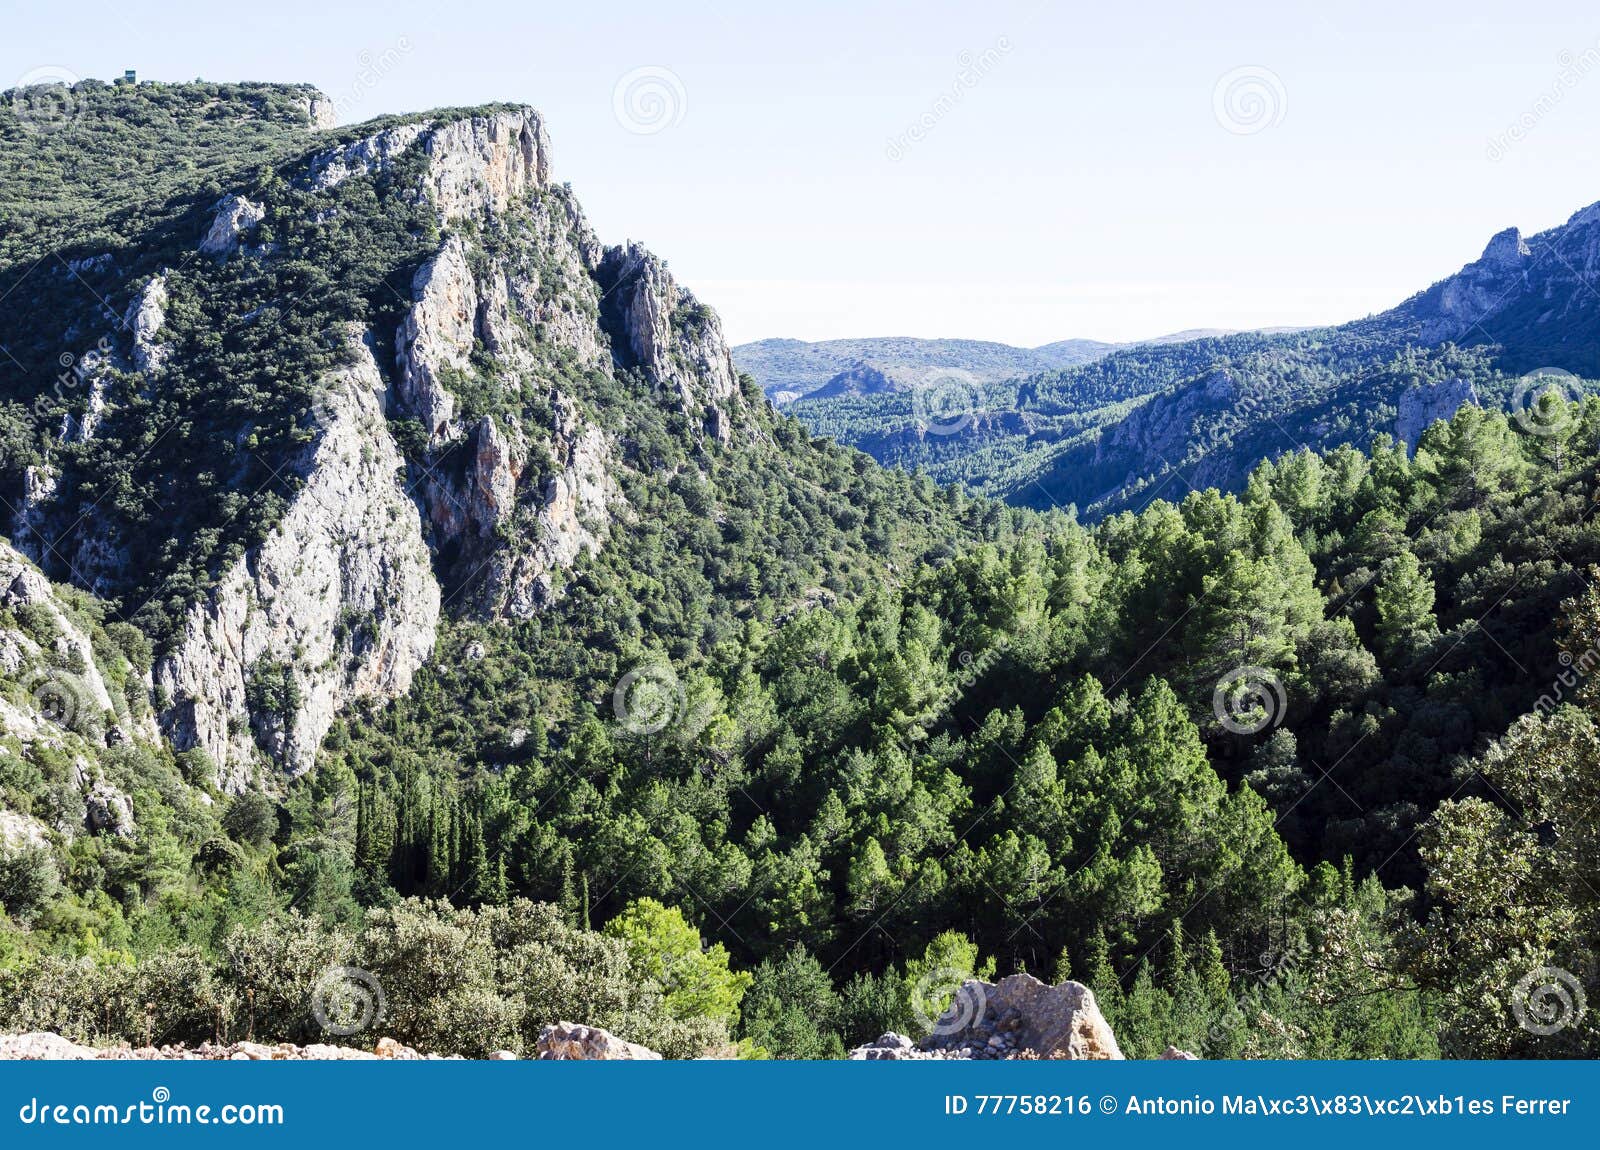 amador rocks, castellon mountains